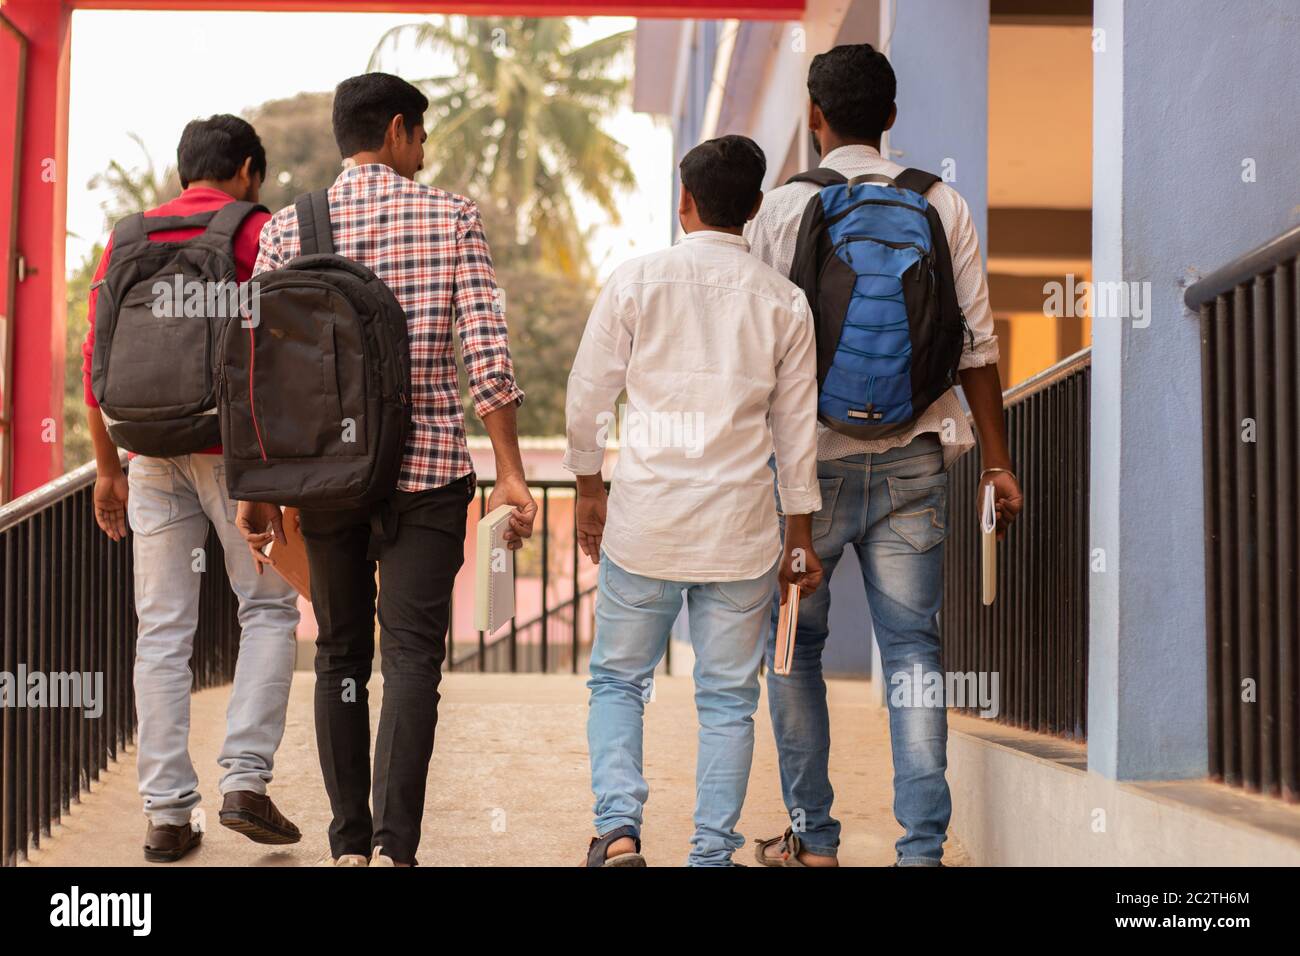 Vista posteriore, gruppo di studenti che tornano al college - amici che camminano nel campus universitario - Istruzione, amicizia, togetherness, lifetyle Foto Stock